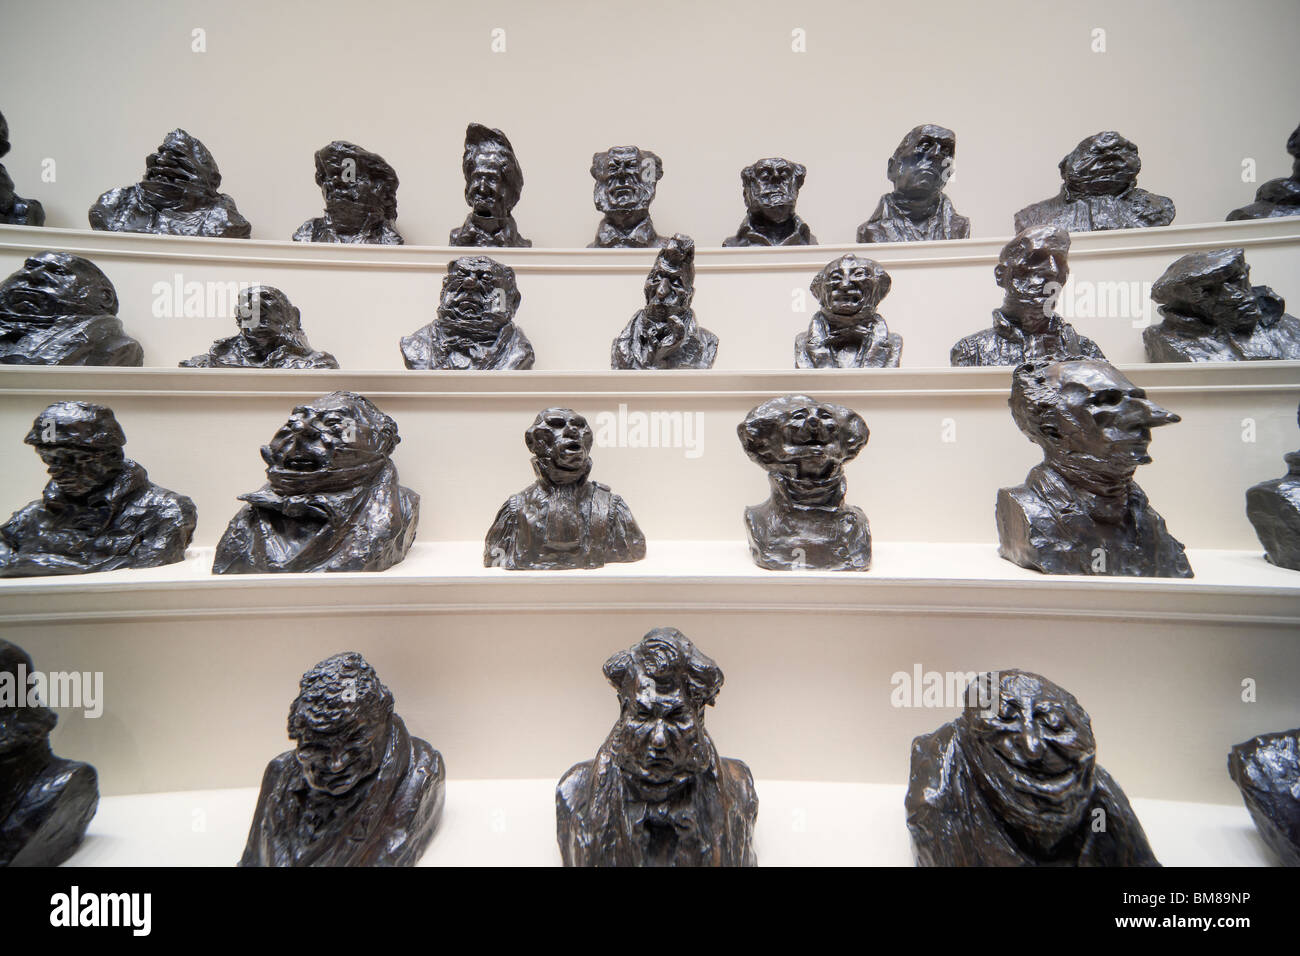 Washington DC e Galleria Nazionale dell'arte. Visualizzazione di una serie di getti in bronzo di caricature di politici da Honoré Daumier. Foto Stock